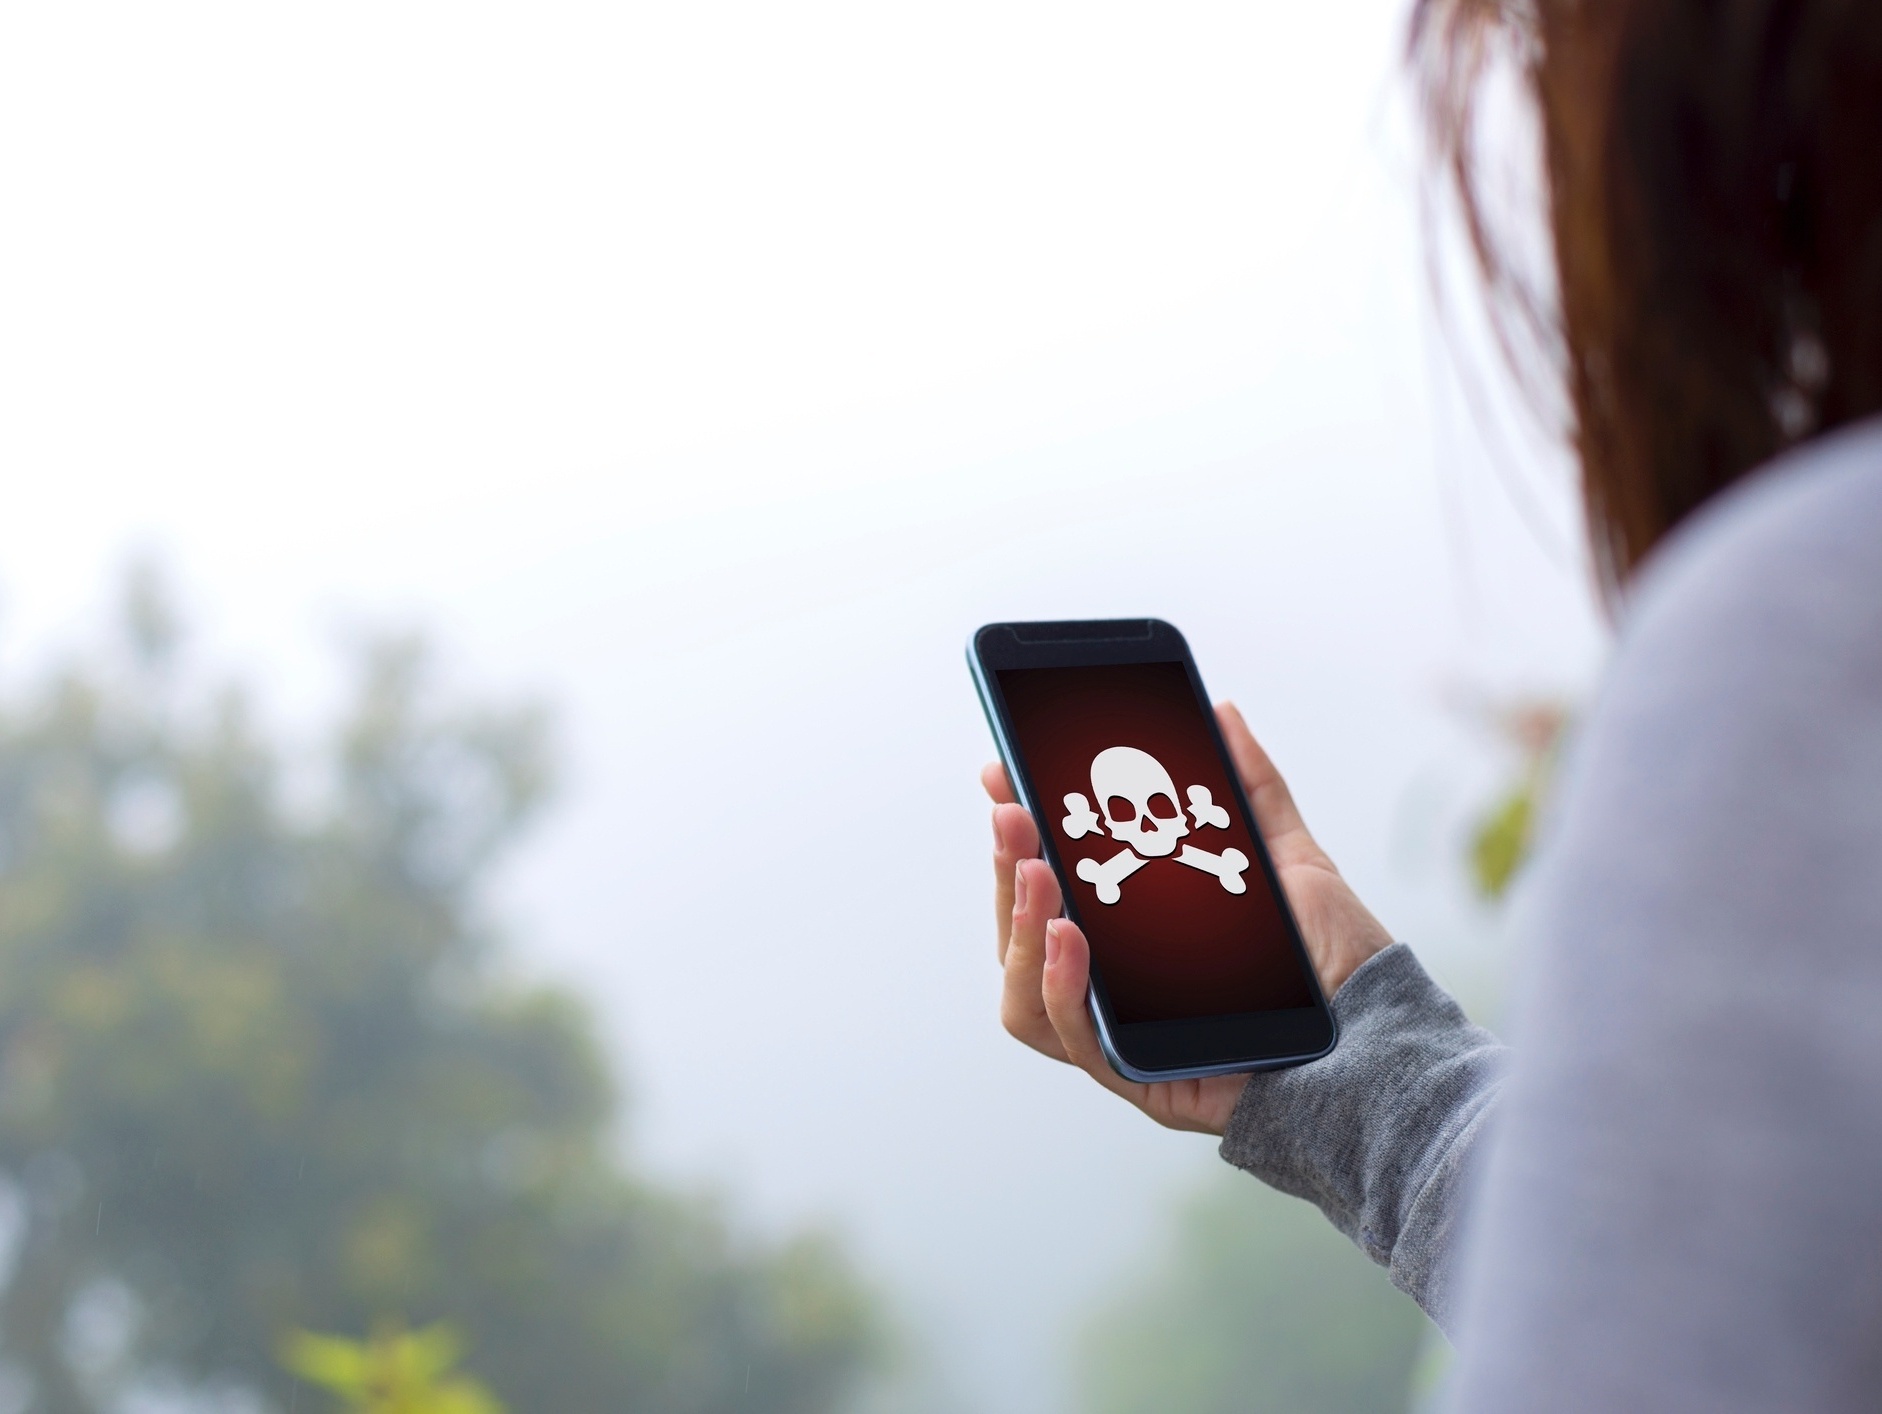 Uso de app espião para vigiar parceiro cresce 51% na pandemia